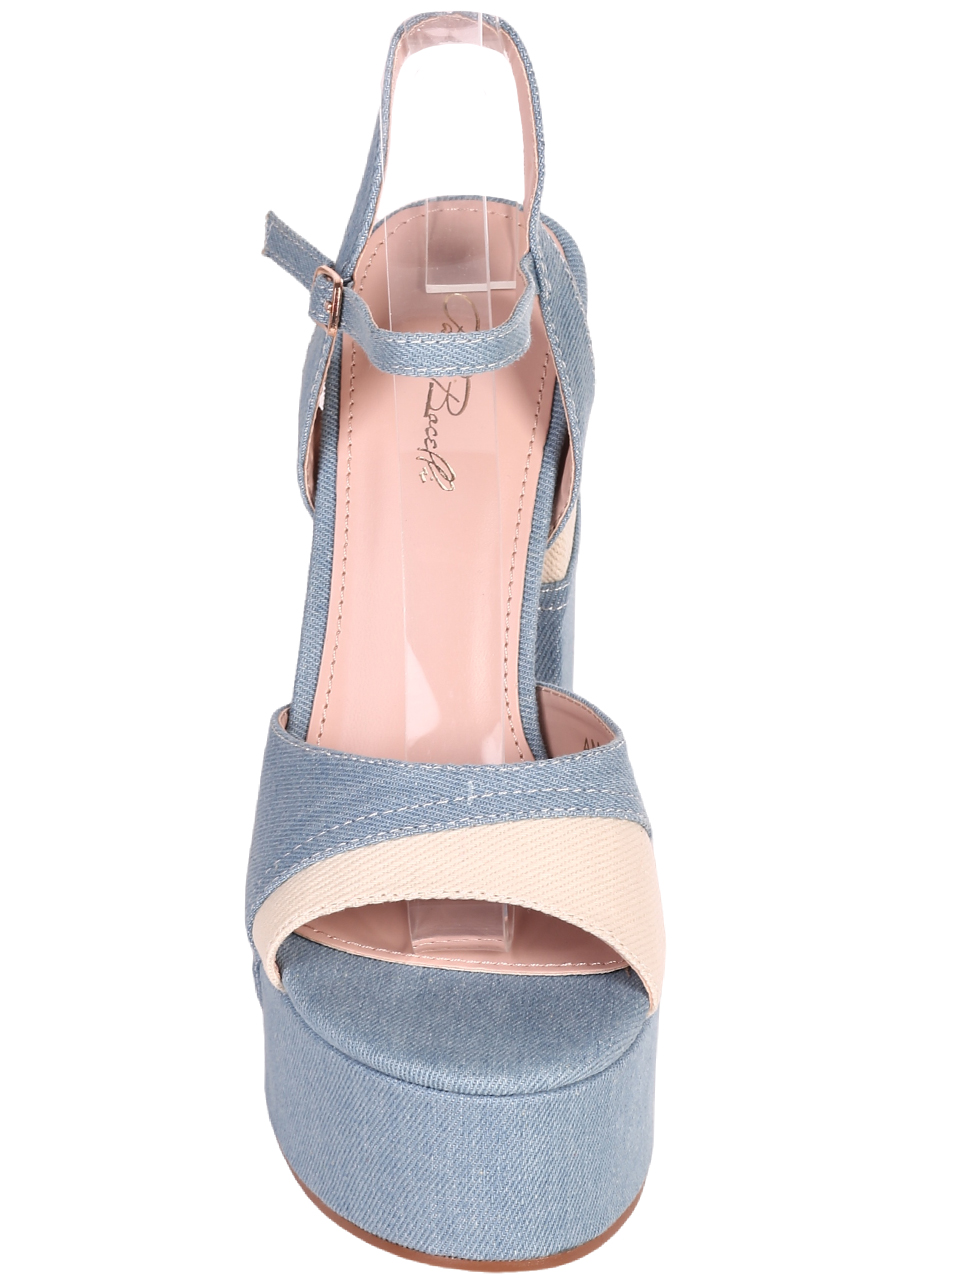 Елегантни дамски сандали в светлосин цвят 4M-24028 lt.blue